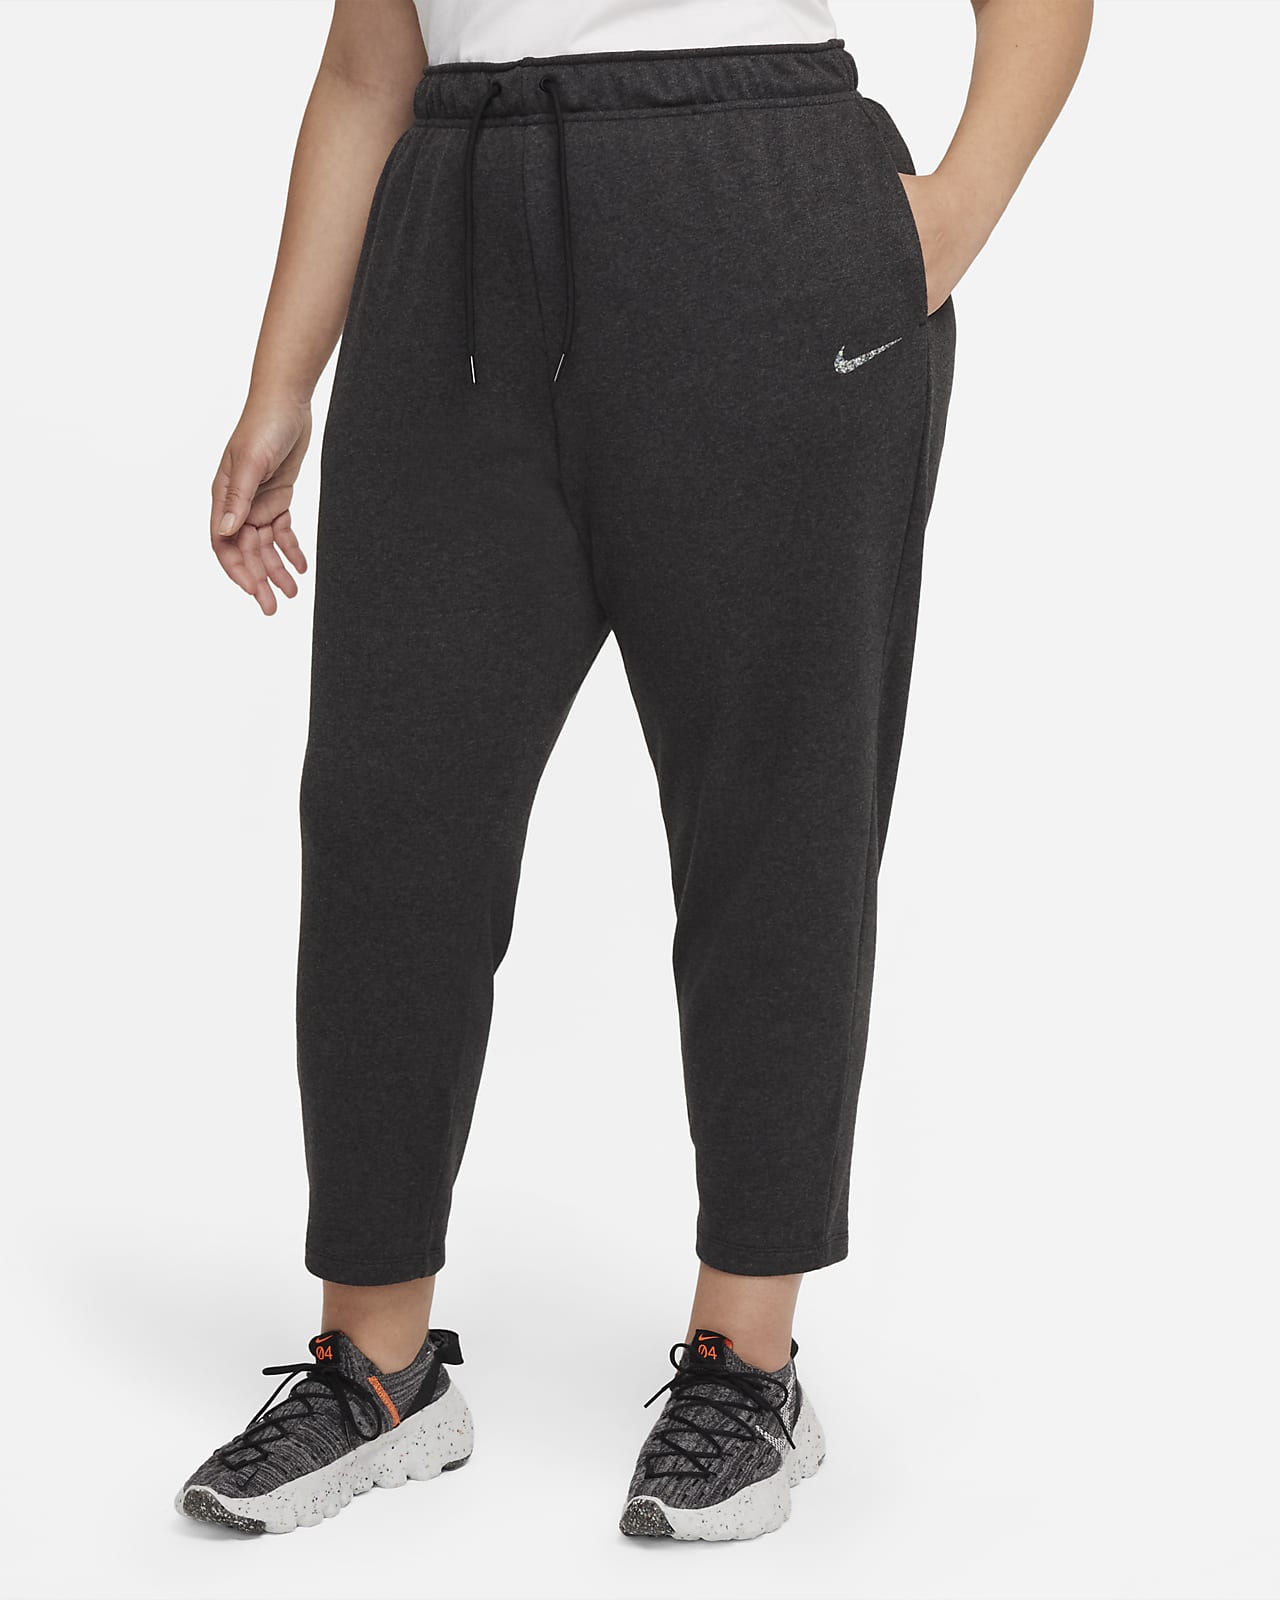 Nike Sportswear Collection Essentials Women's Fleece Pants (Plus Size)